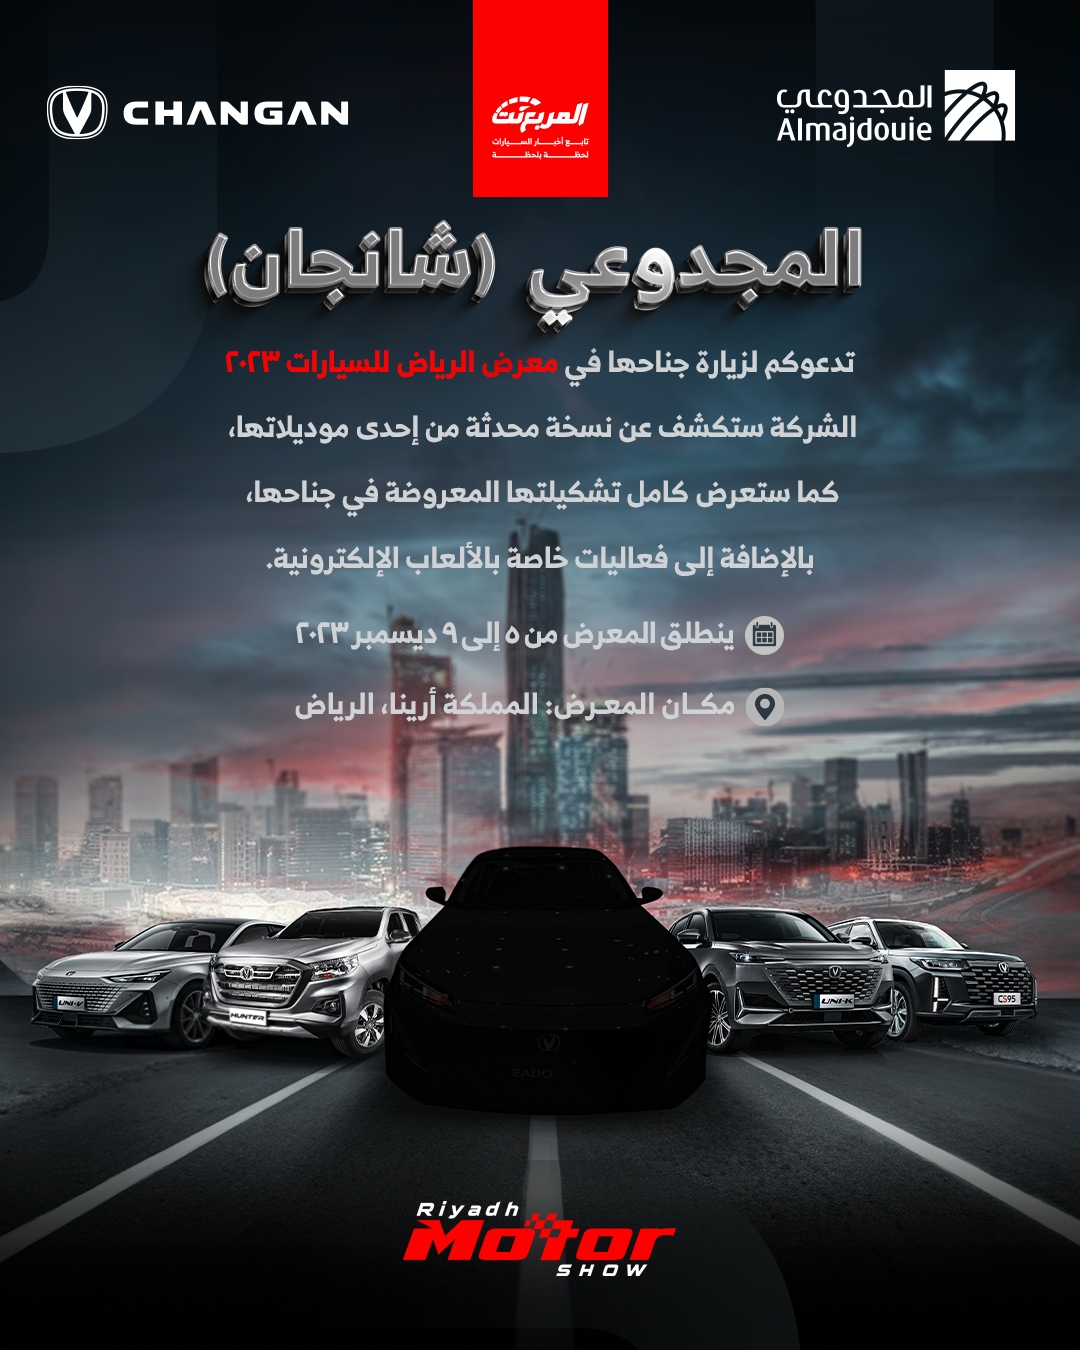 شانجان (المجدوعي) تستعد للمشاركة في معرض الرياض للسيارات 2023 لإطلاق سيارات جديدة وحضور فعاليات ترفيهية 2